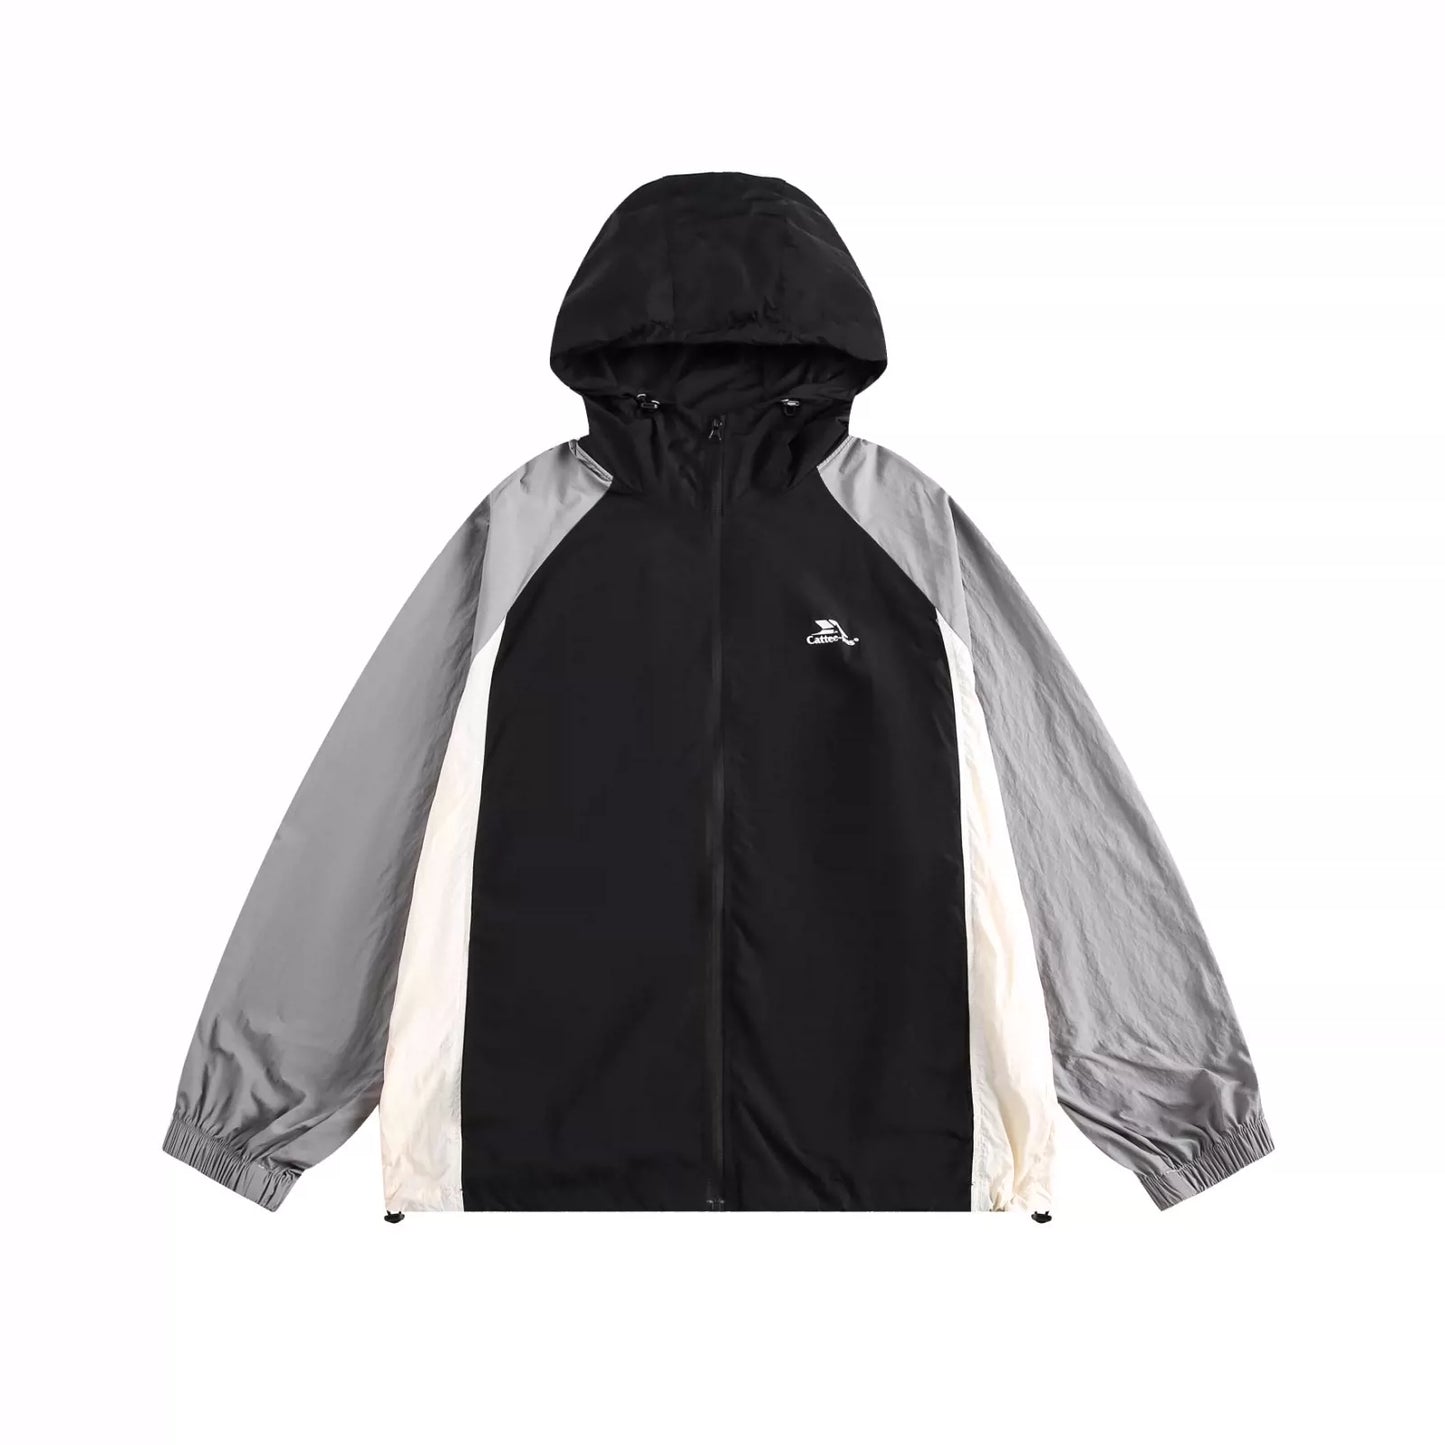 UV-Proof Breathable Hooded Jacket